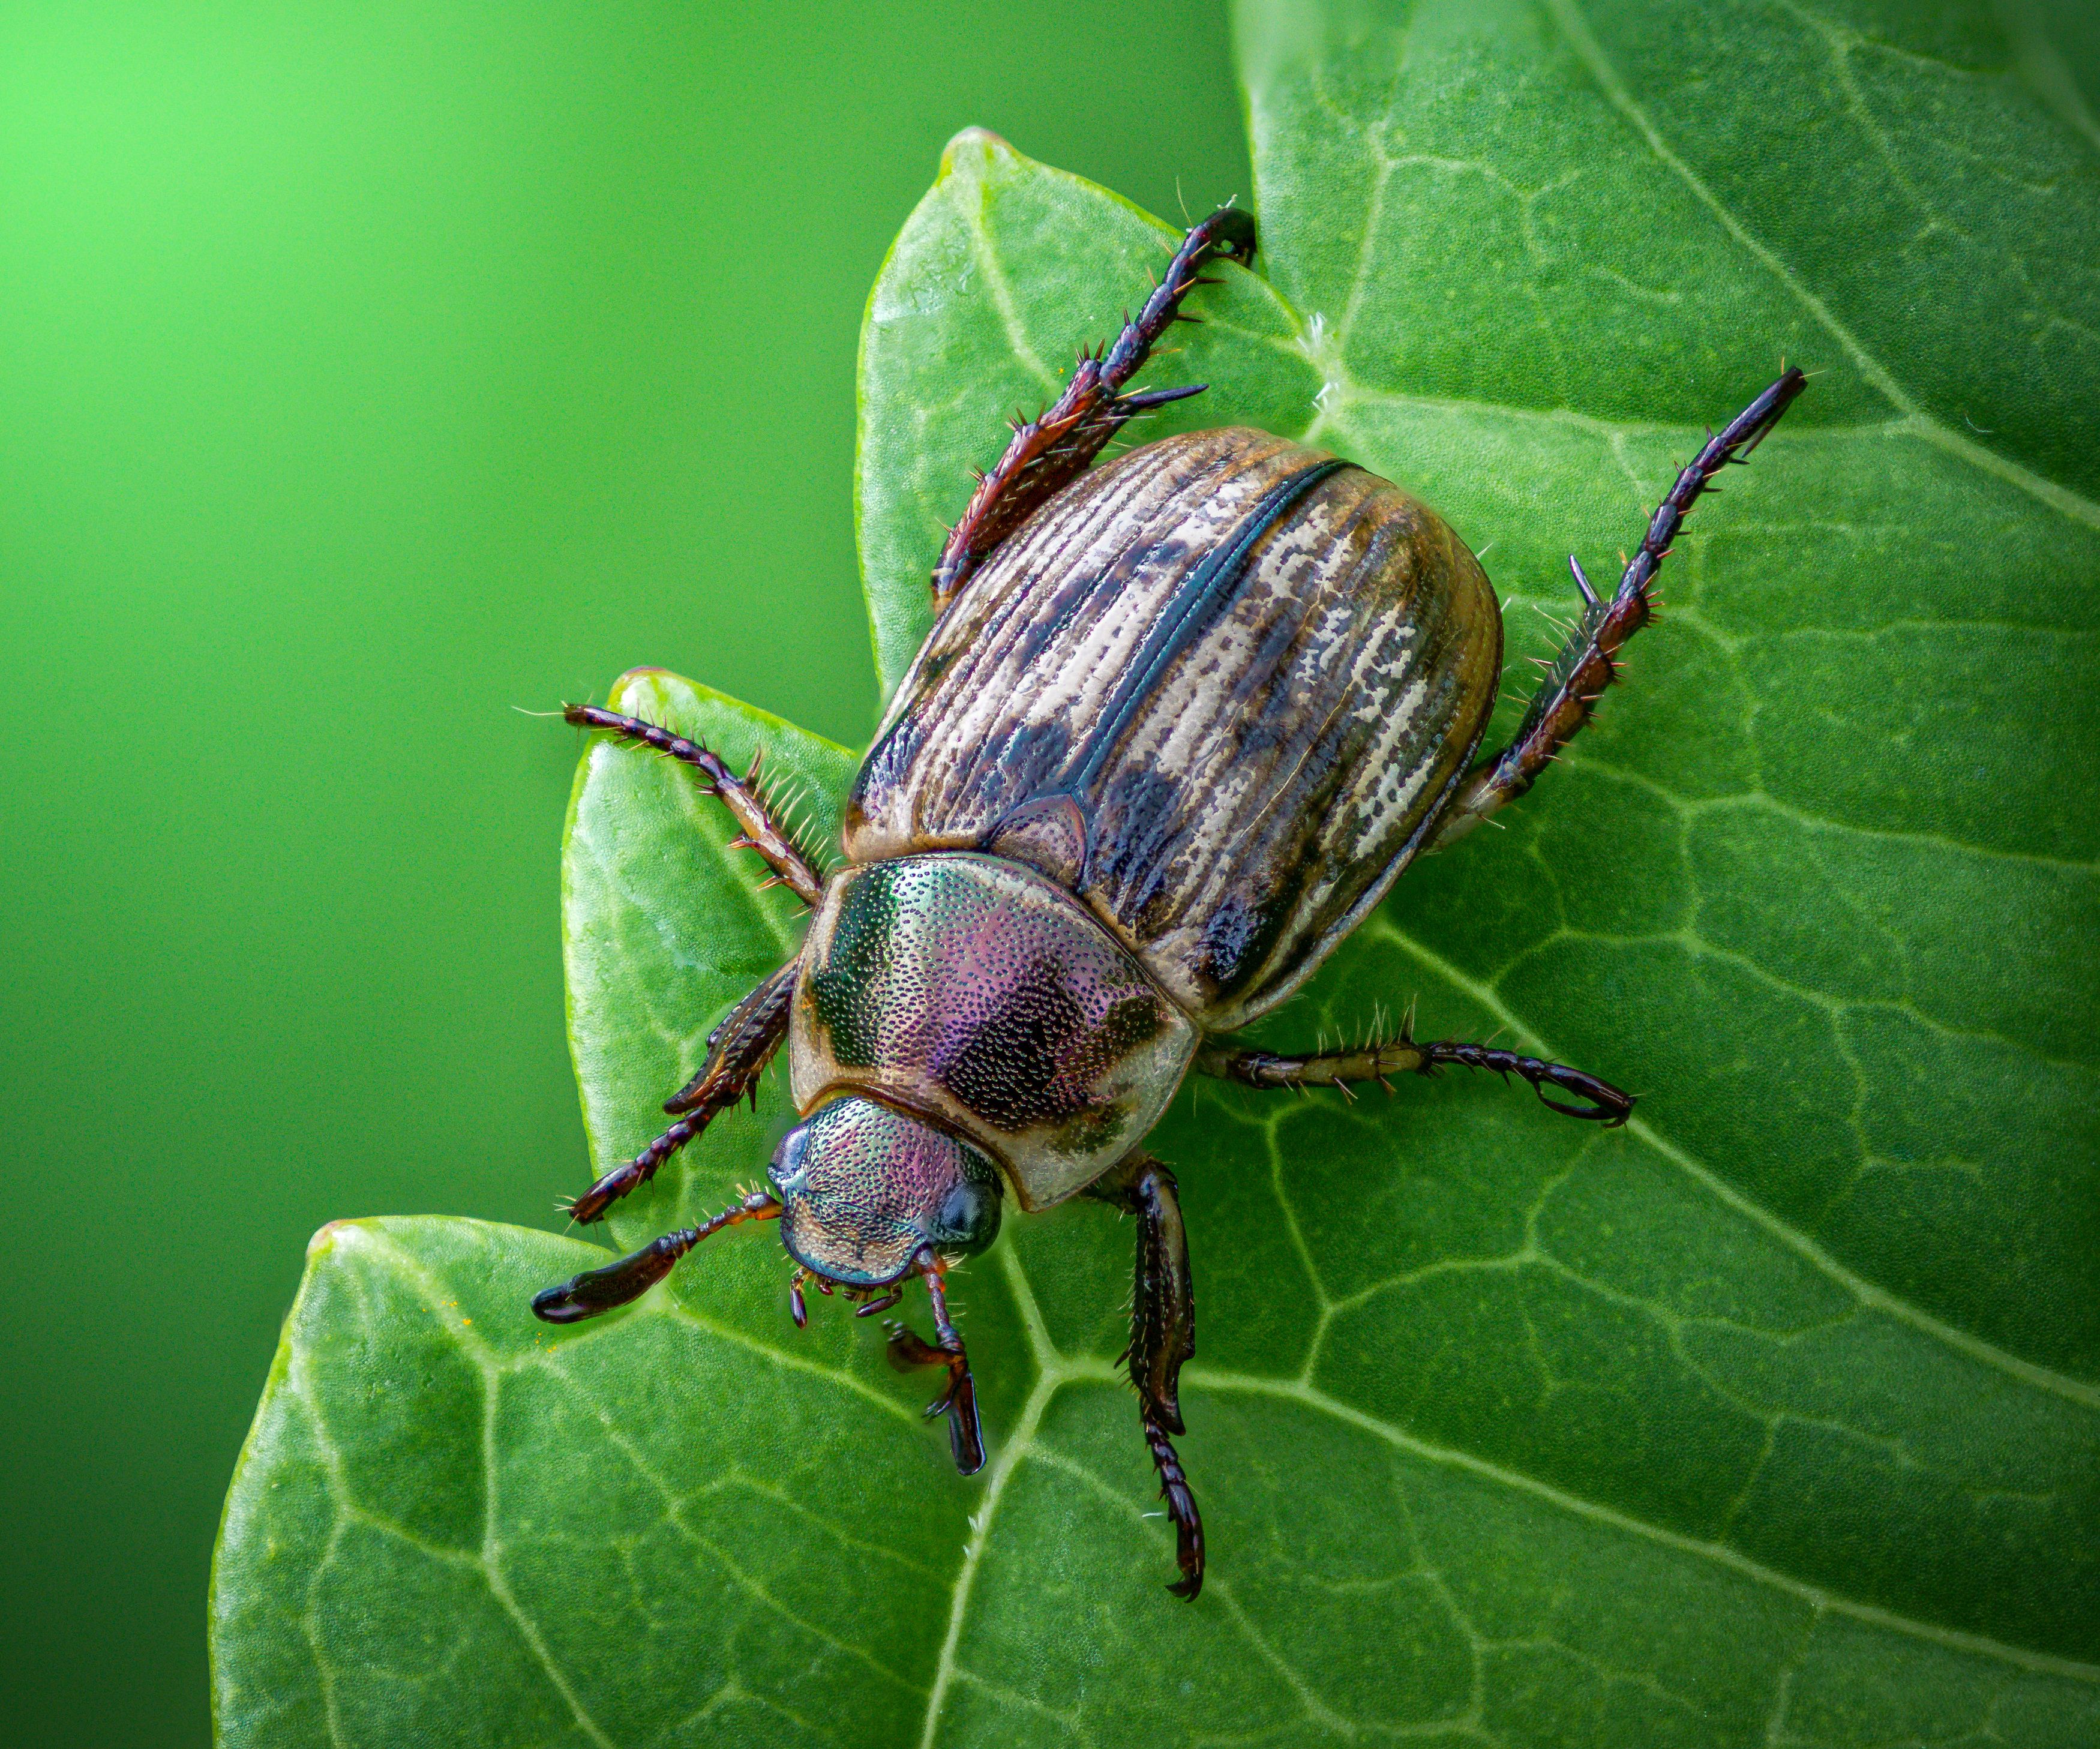 oriental beetle, beetle, insect, fall, autumn, stink bug, macro, leaves, season, seasons, camouflage, camouflaged,, Atul Saluja